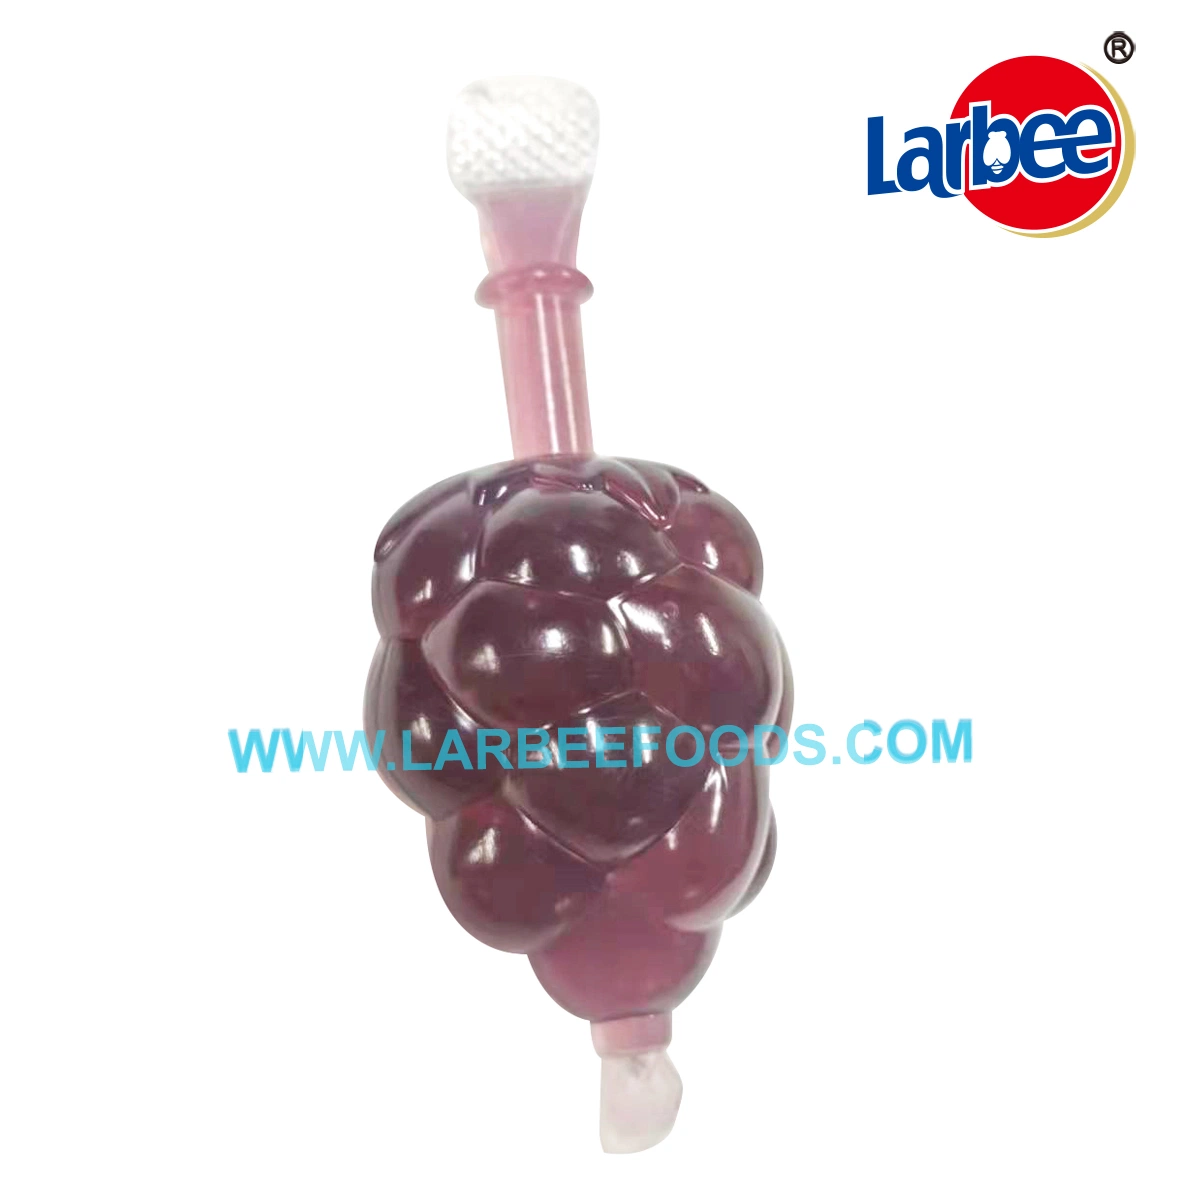 Larbee Оптовая сладкая свеча 40 г фруктовый джелли напиток с фабрики